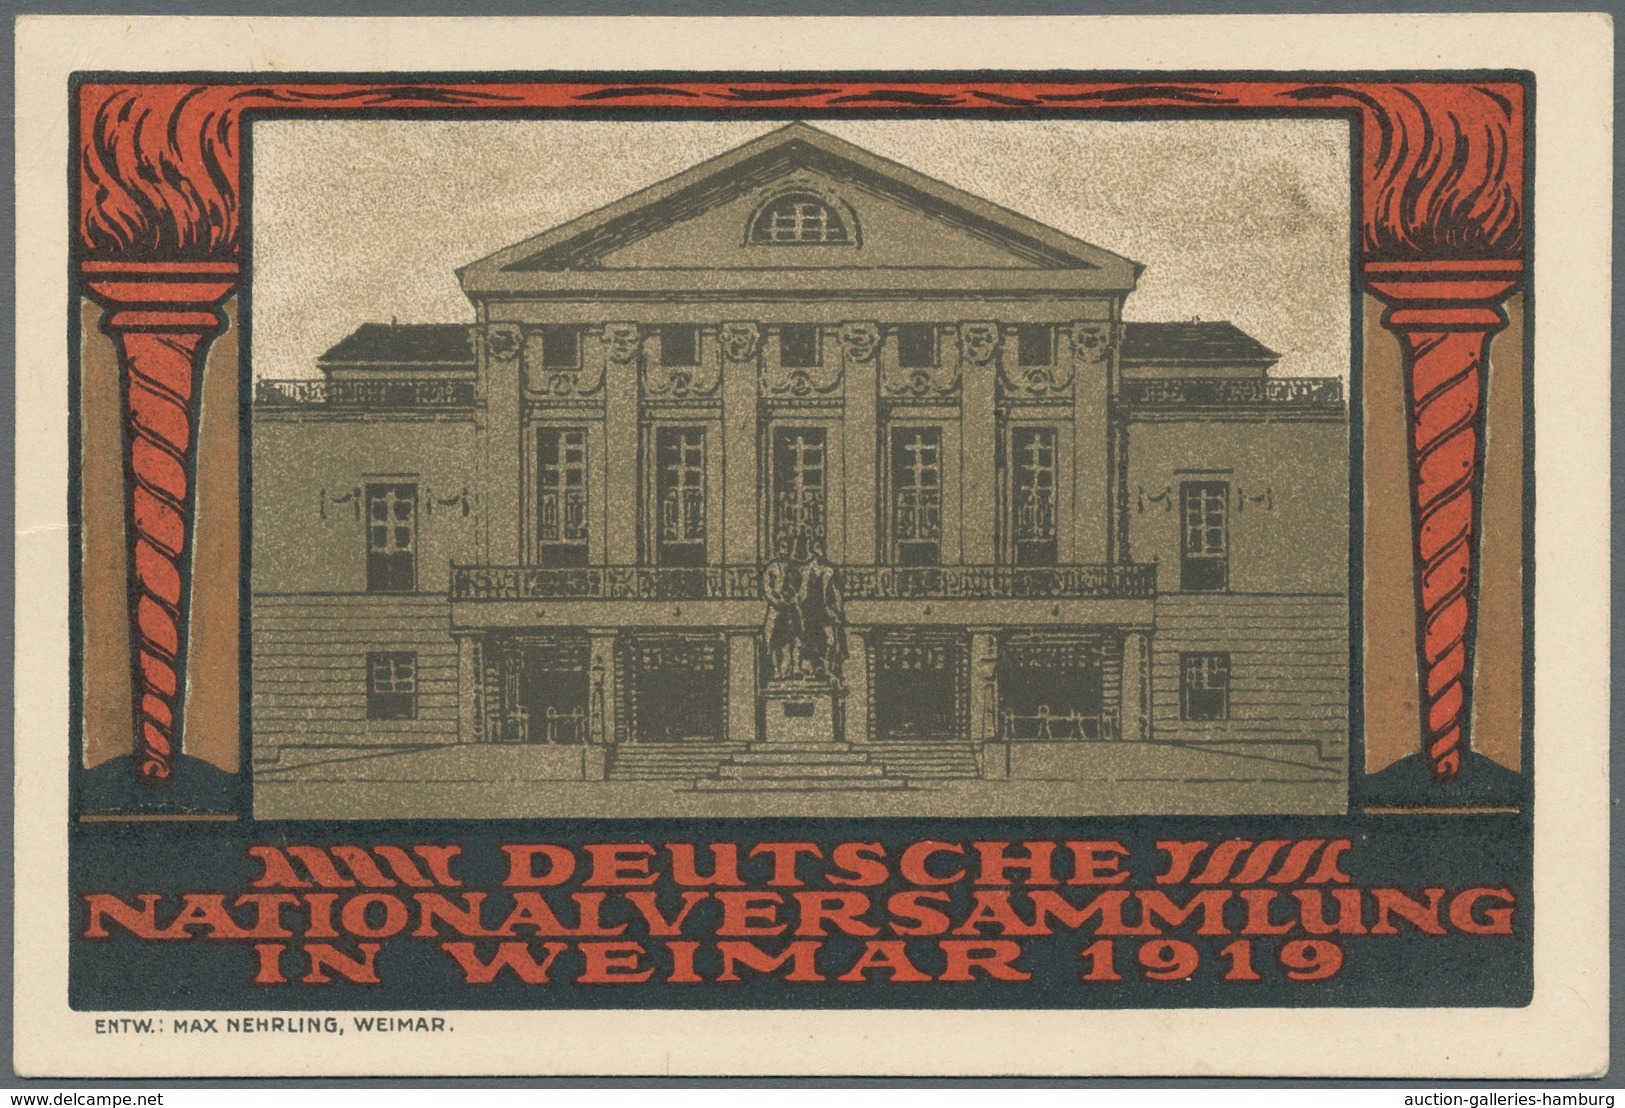 Deutsches Reich - Inflation: 1919 Nationalversammlung fünf mal auf FDC, dabei 2 farbige Bildkarten.